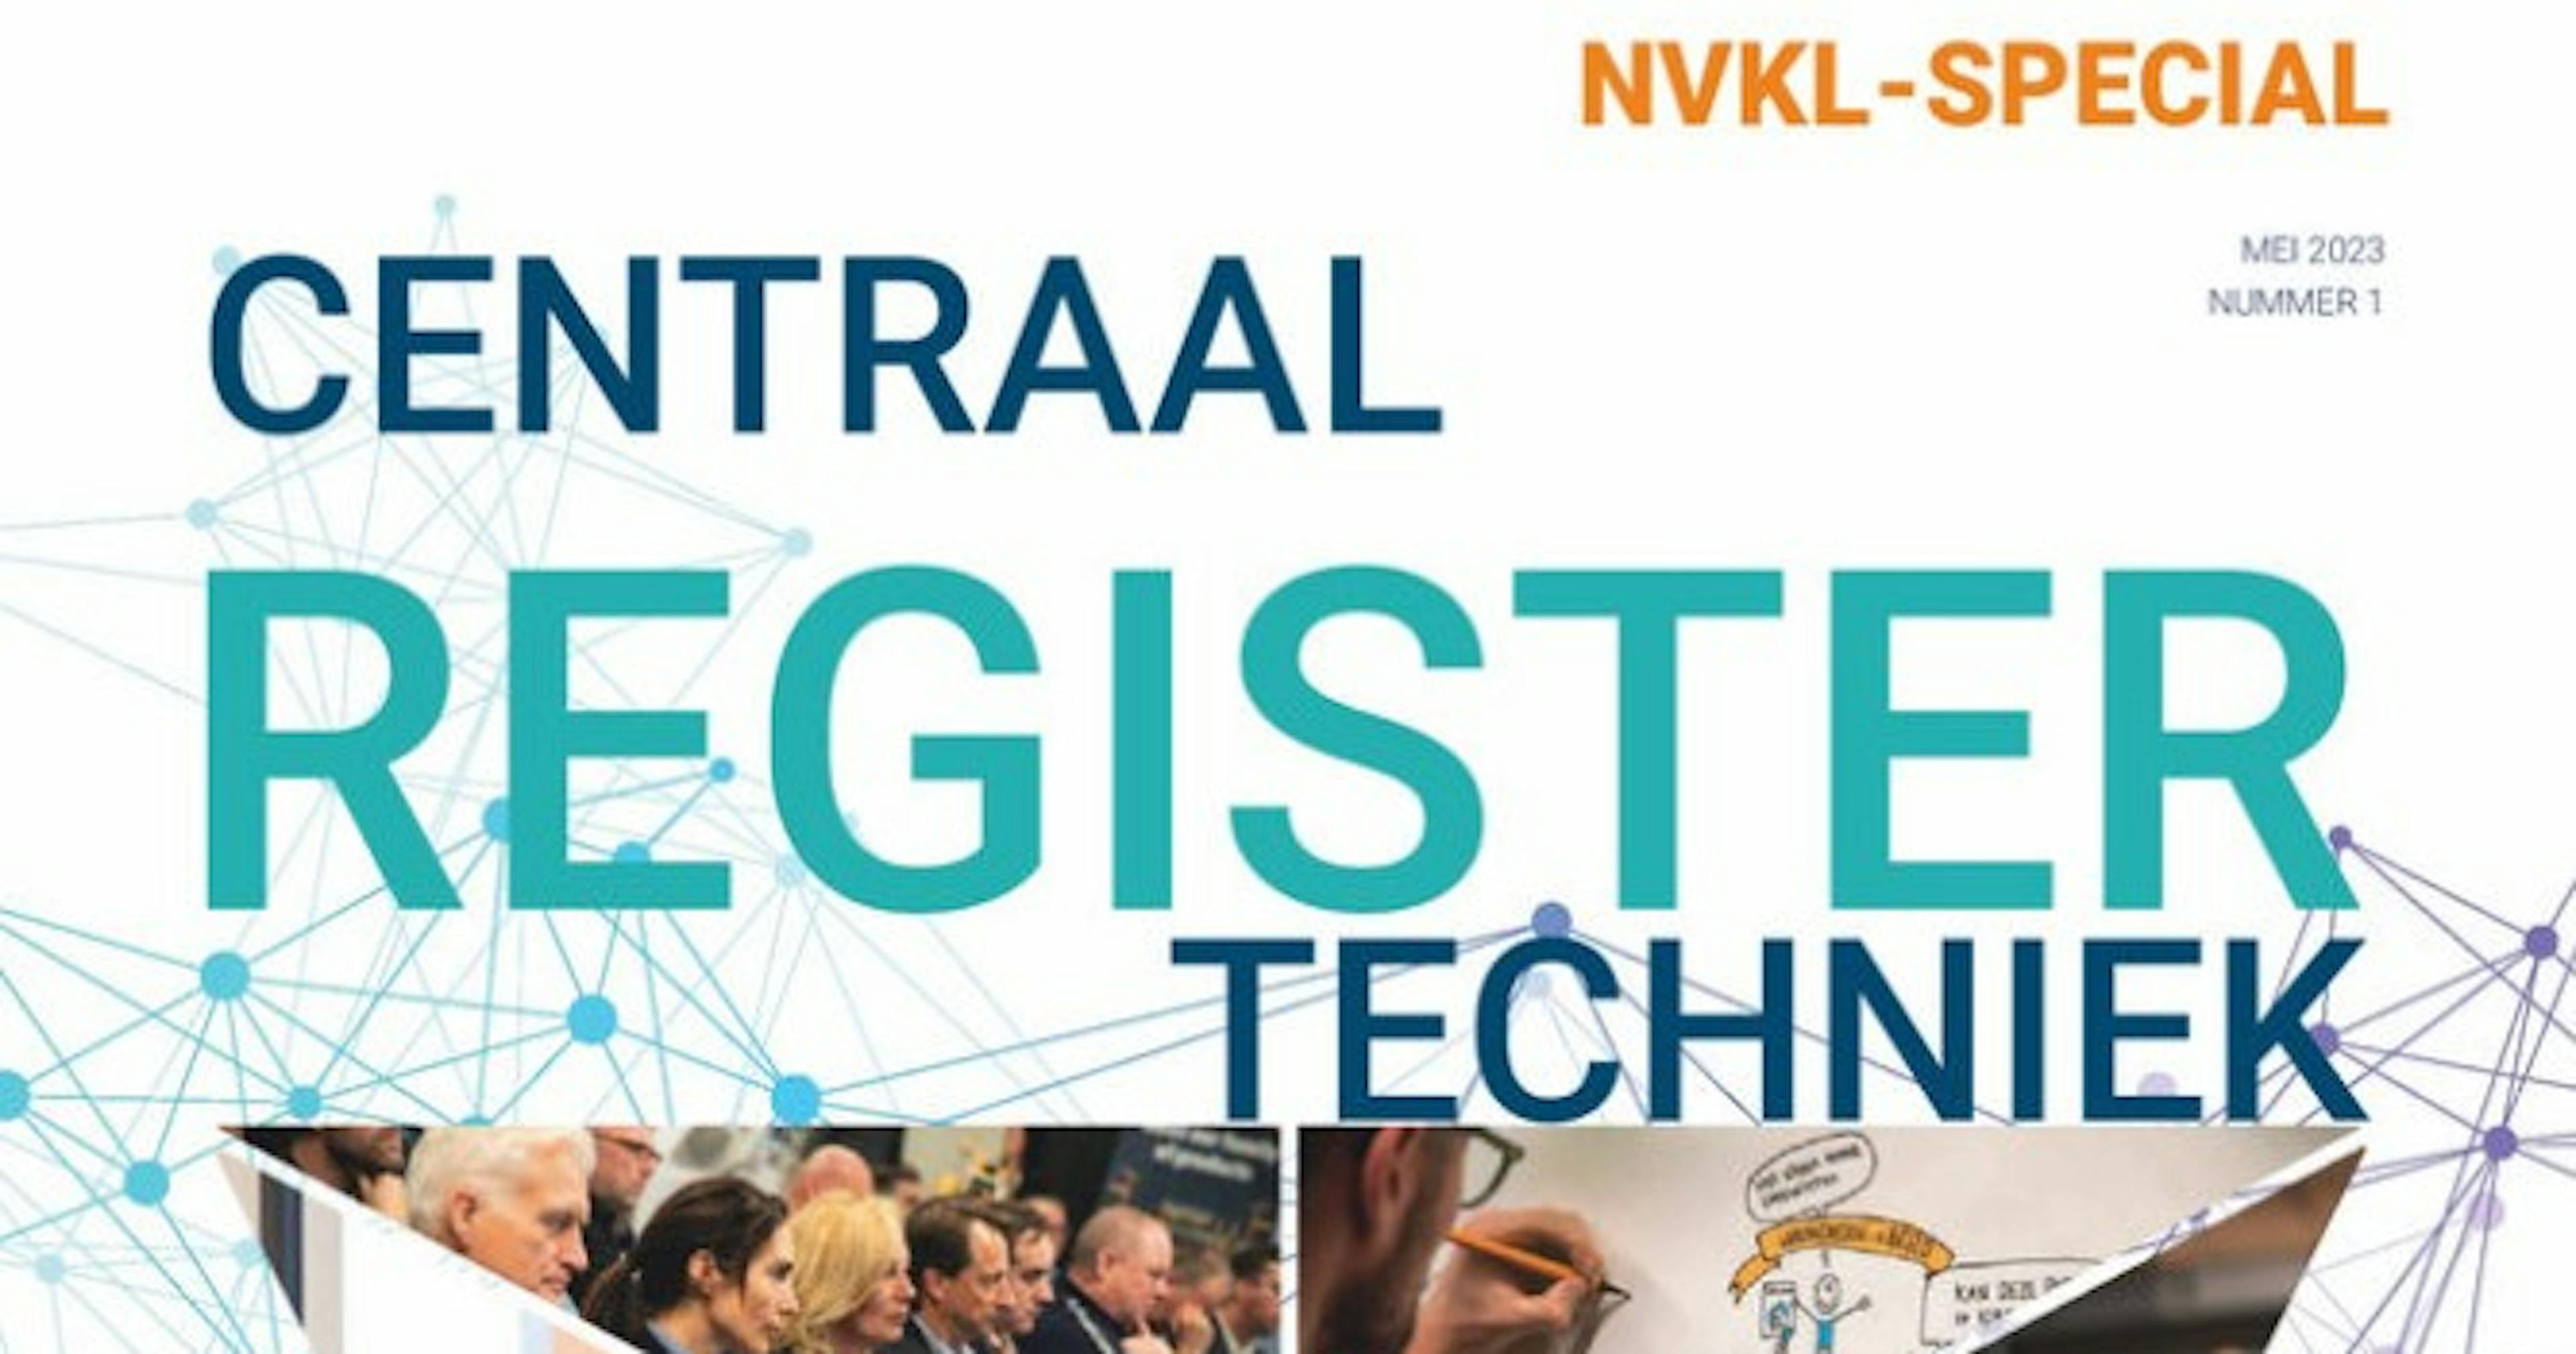 Centraal Register Techniek magazine special voor leden NVKL.